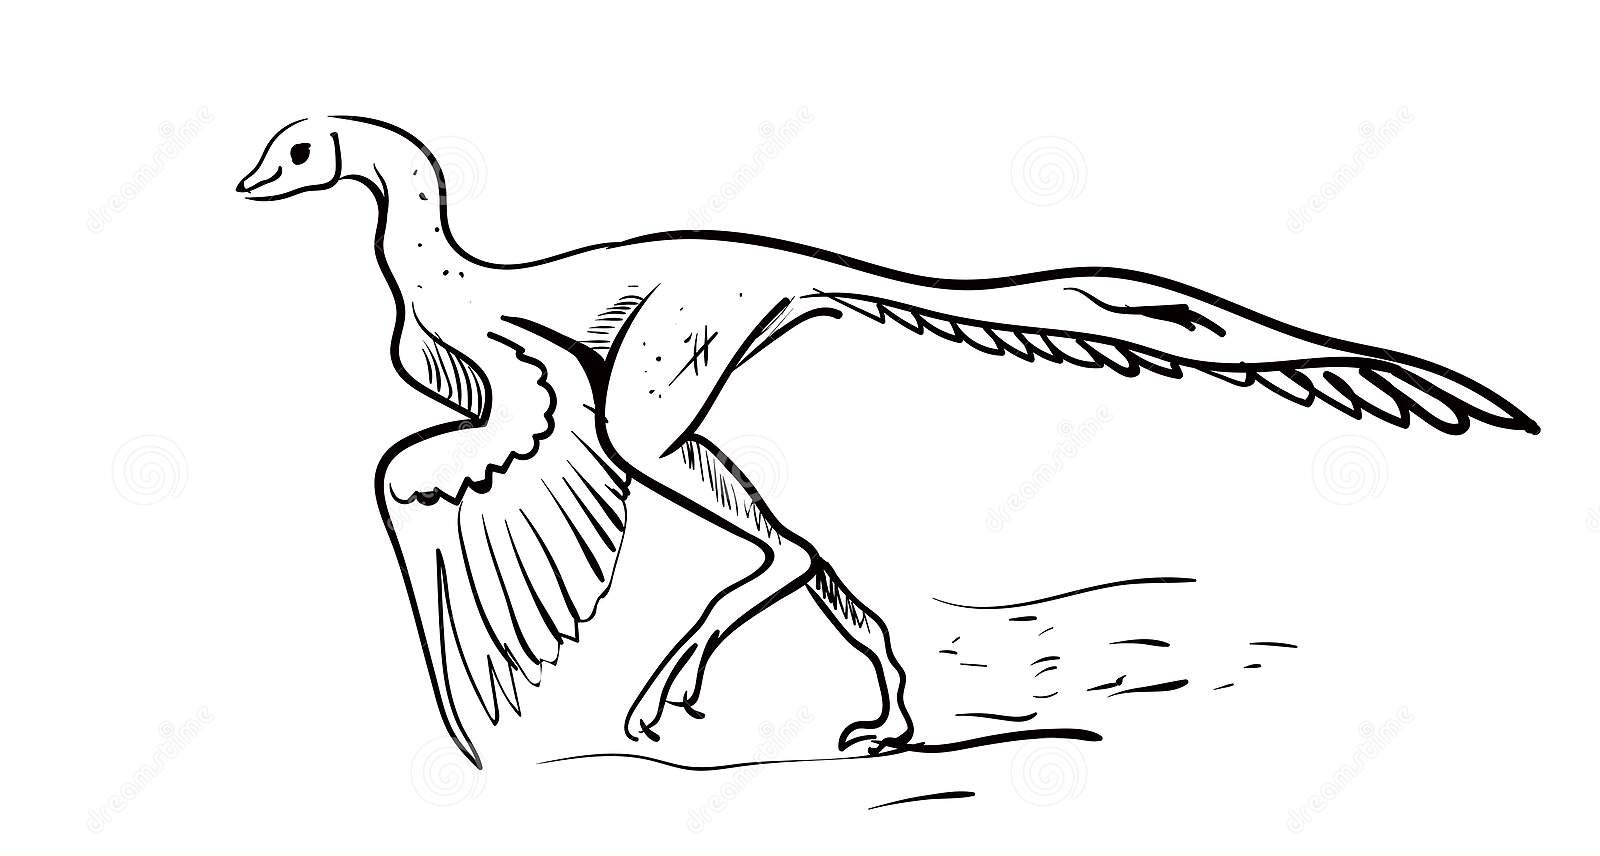 Archaeopteryx illustrator vector witte achtergrond van Archaeopteryx